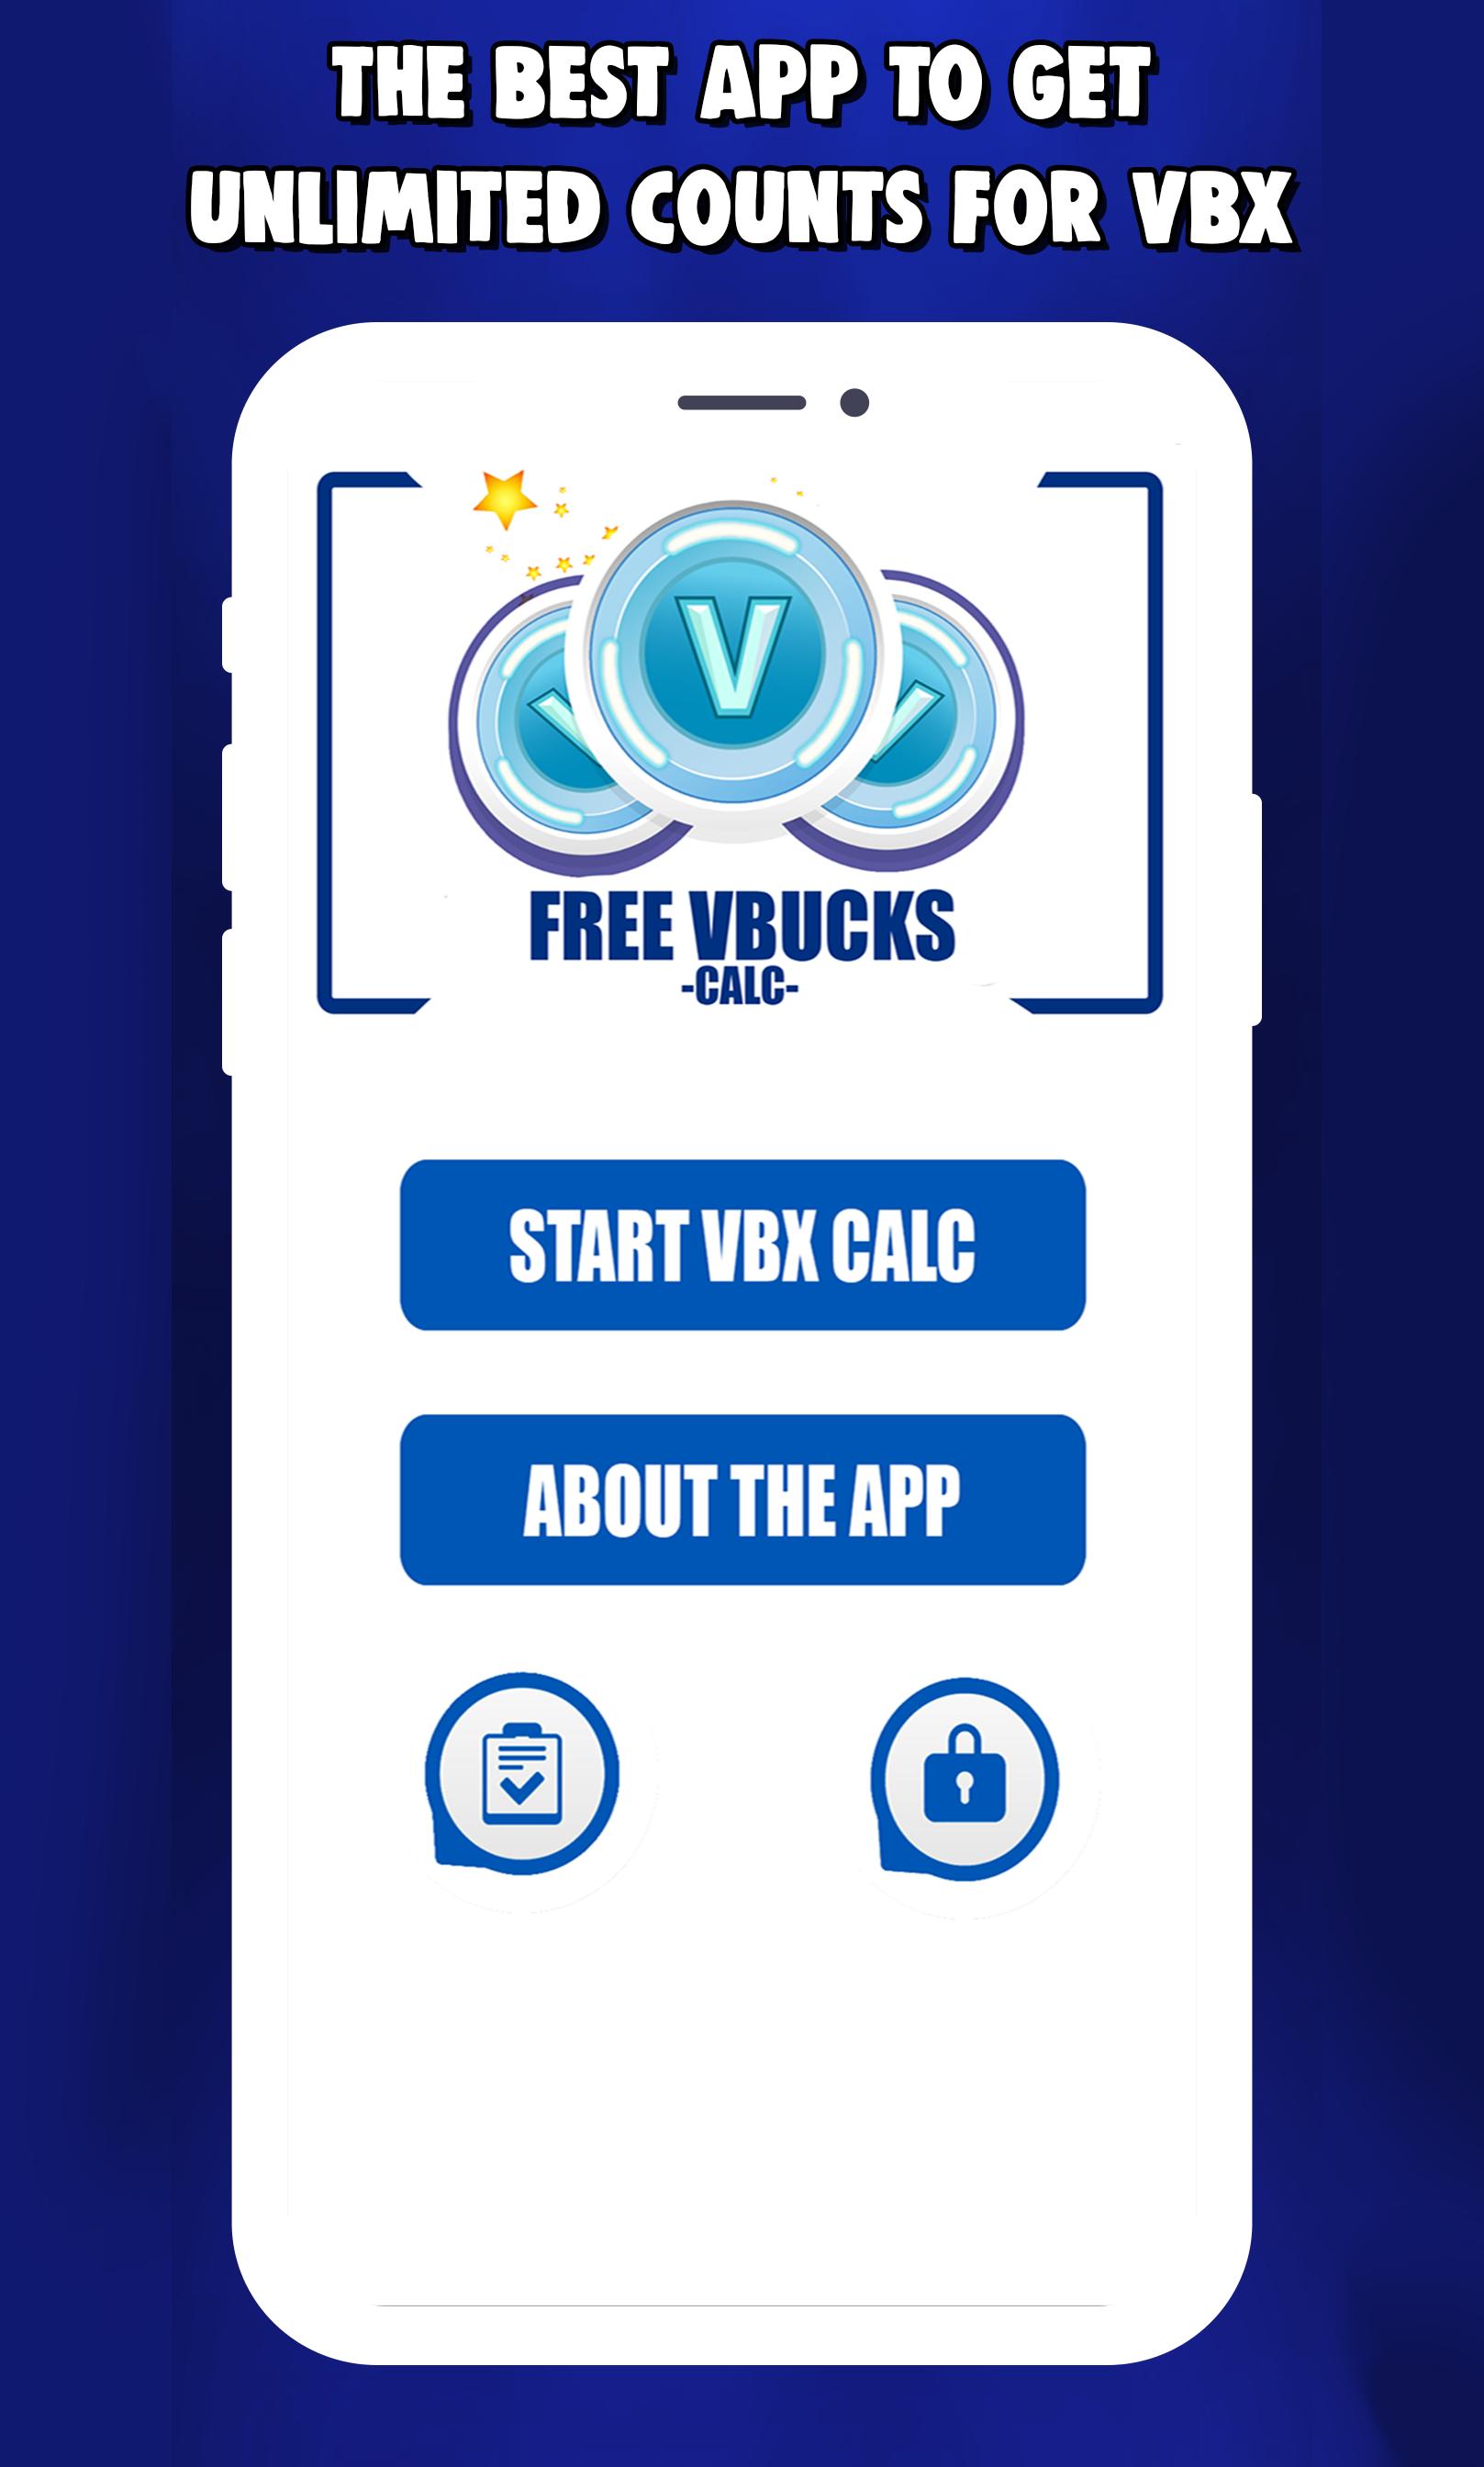 Free V Bucks App 2020